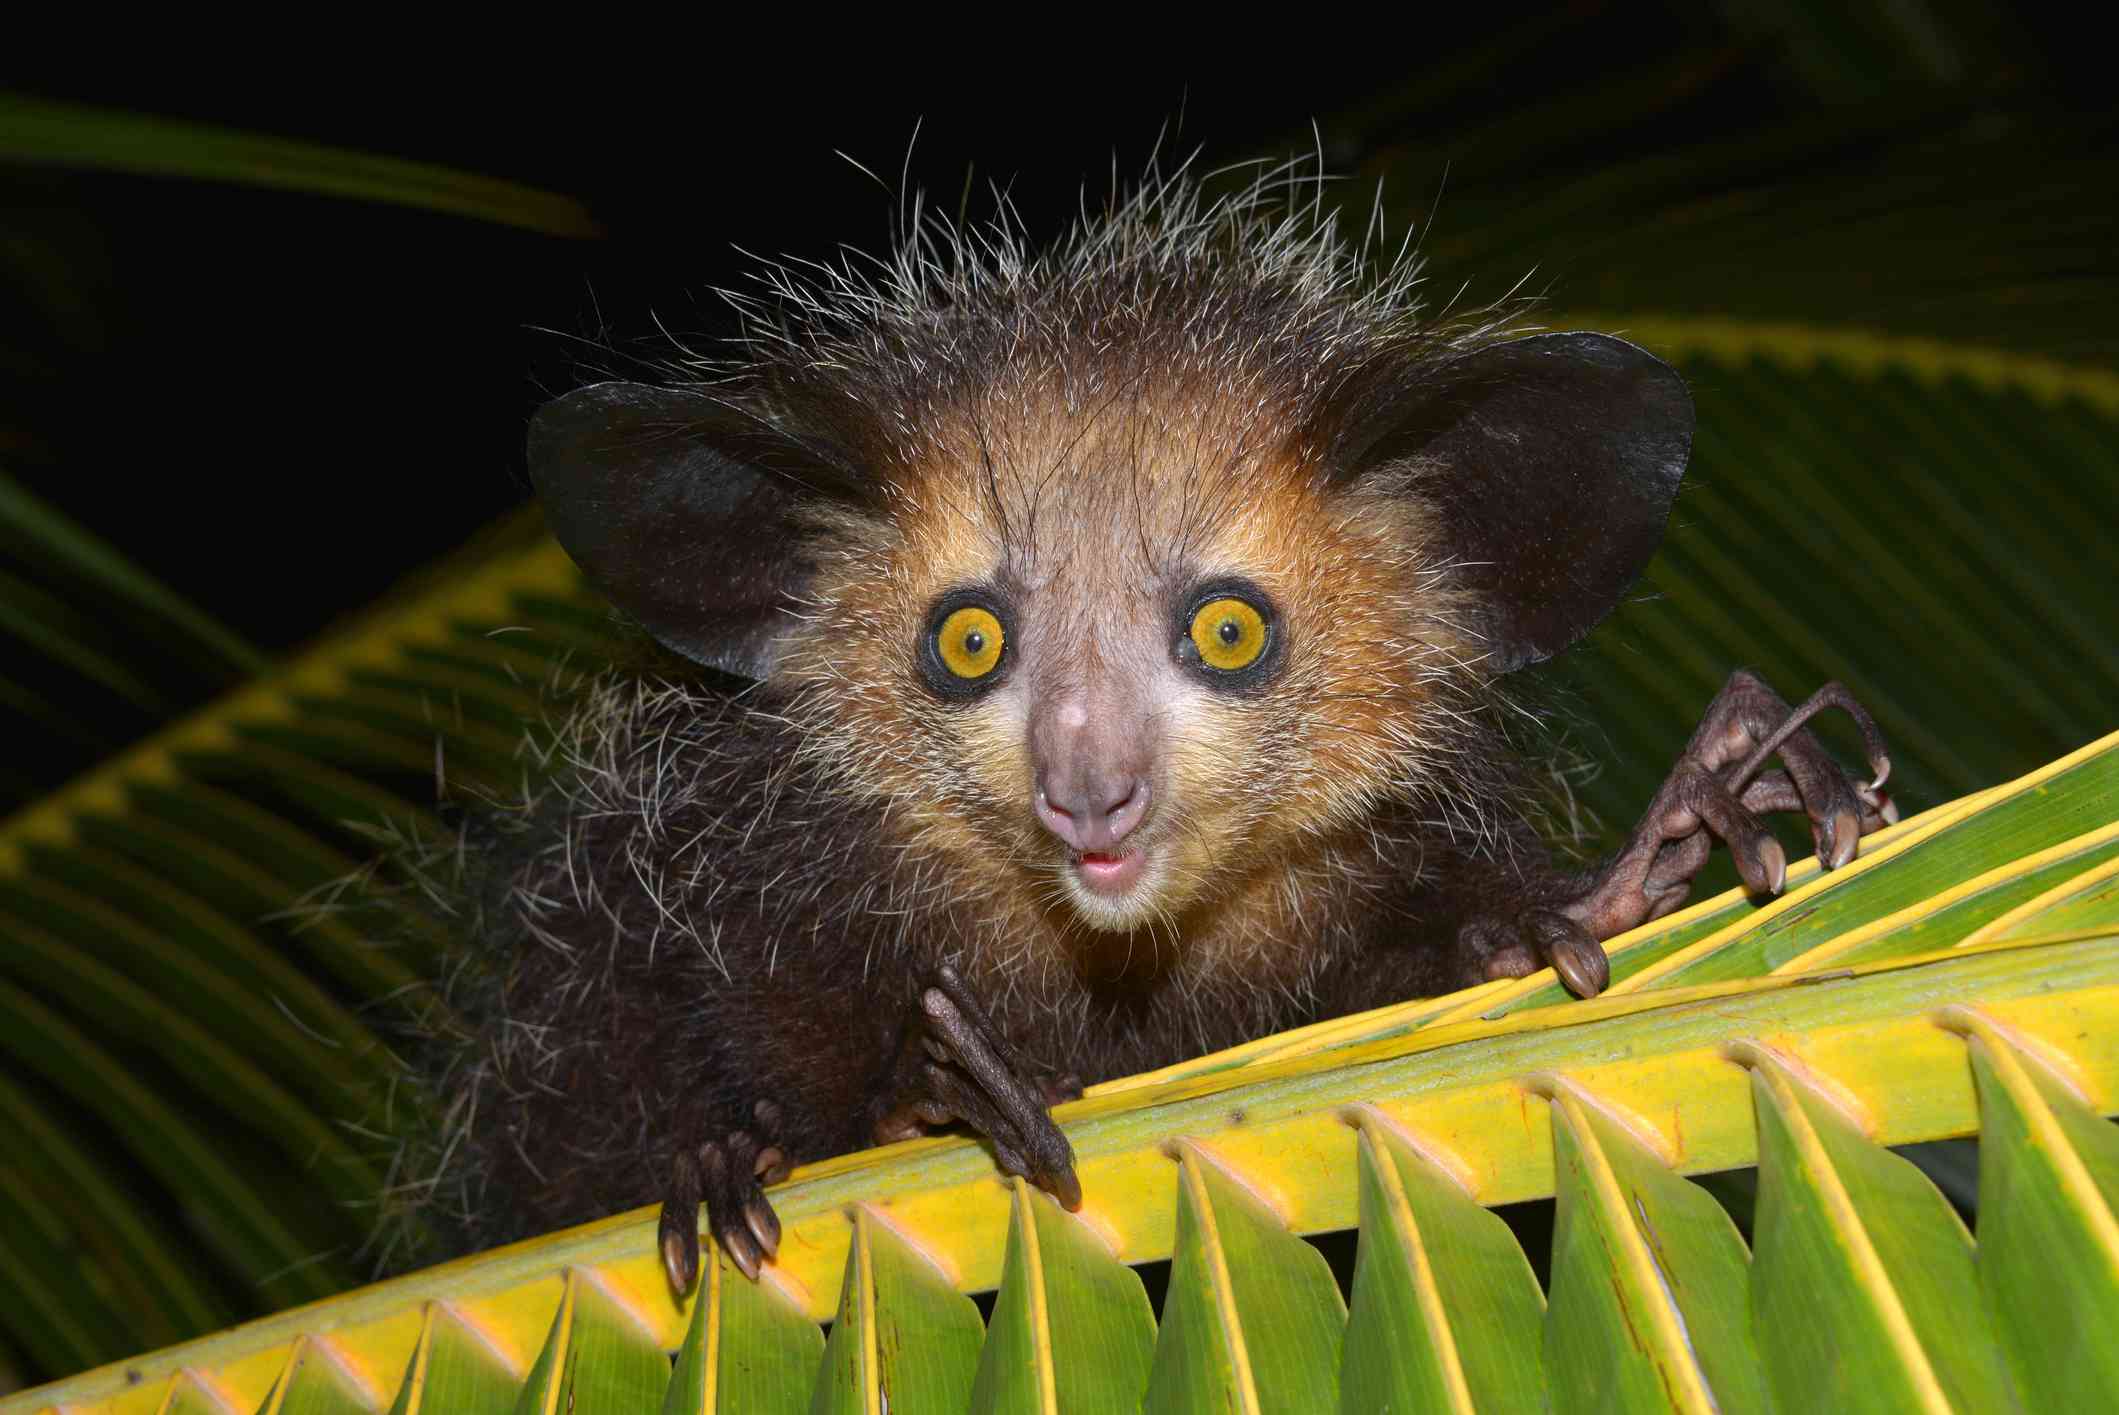 Un aye-aye mirando al frente con pequeños ojos amarillos y diminutas patas sentado en una hoja de palmera.